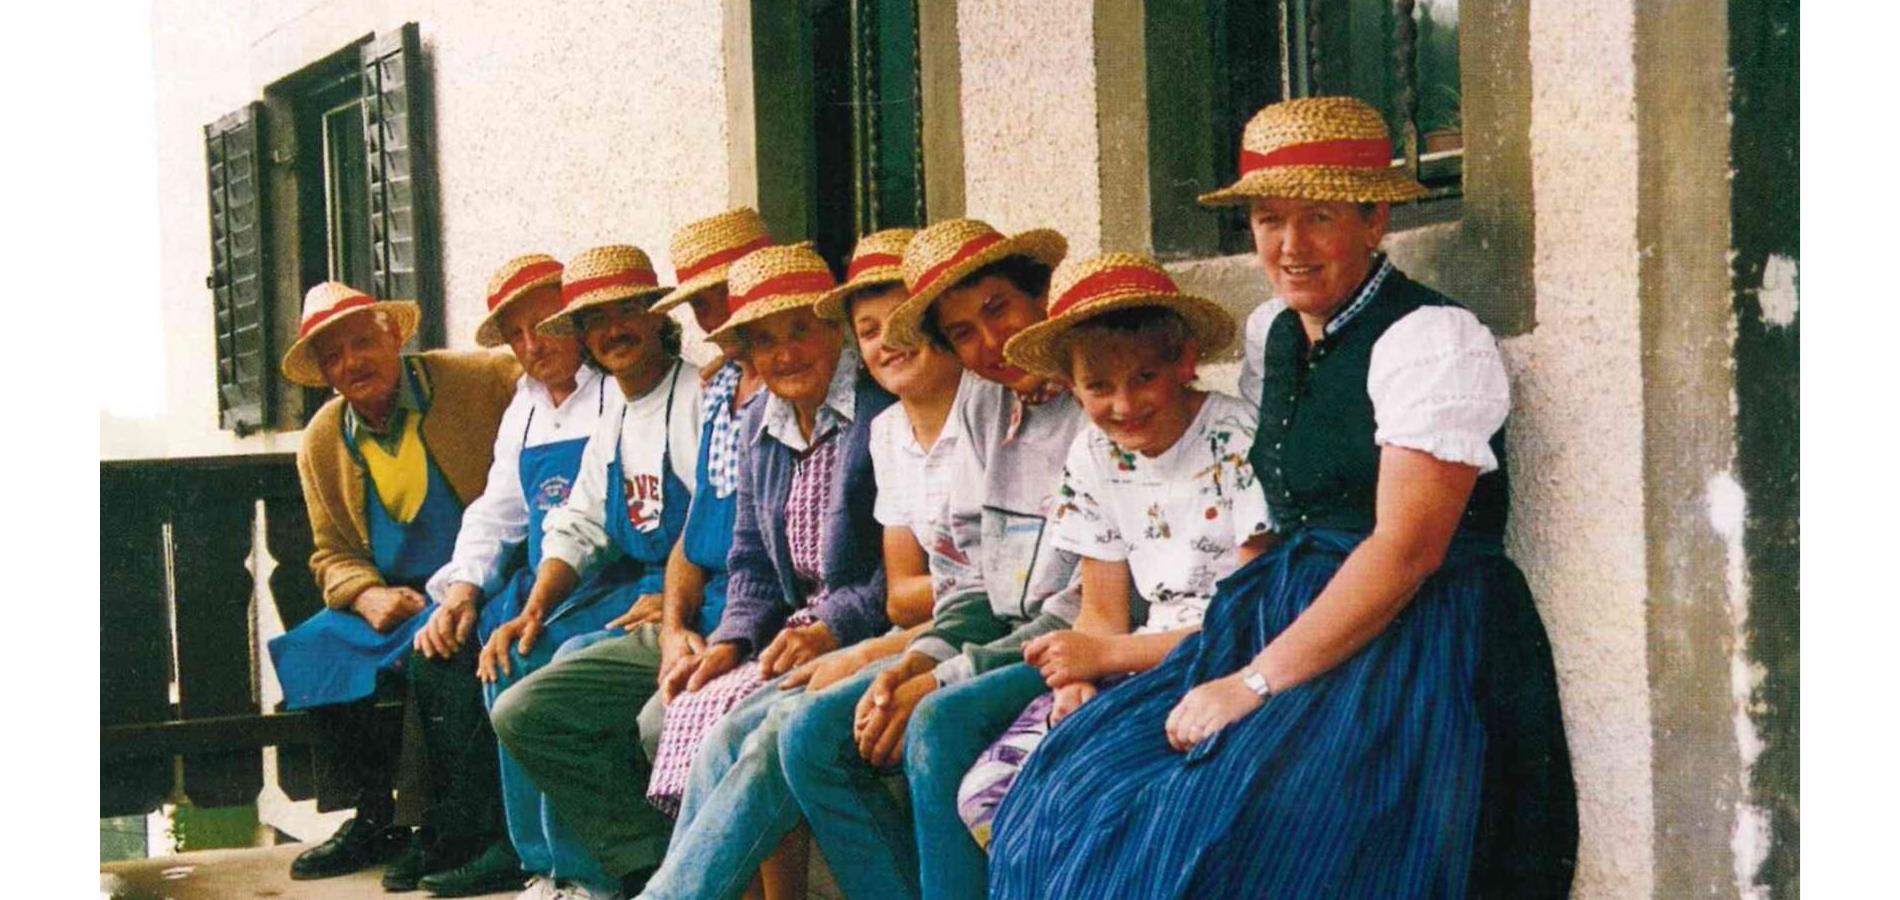 La tradizione dei cappelli di paglia ad Avelengo e Verano